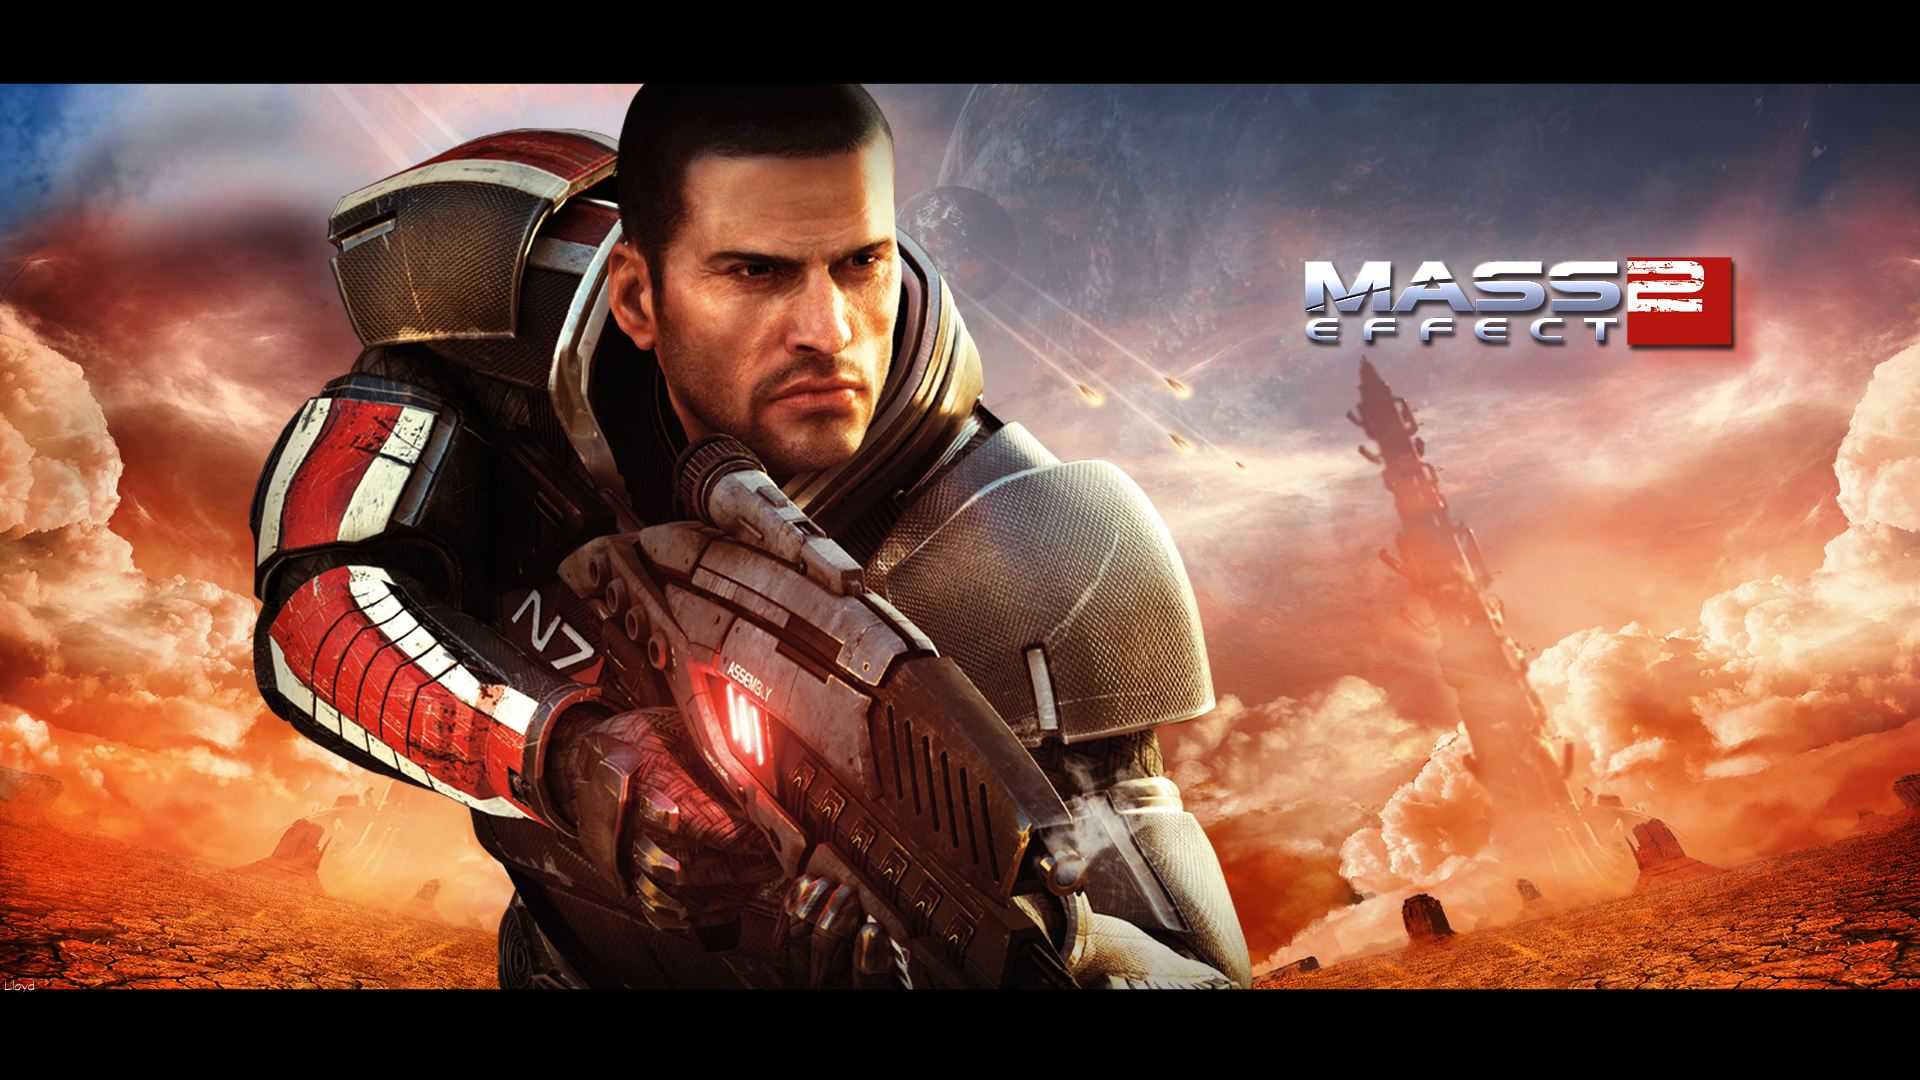 《质量效应2》(Mass Effect 2)V1.0汉化补丁下载